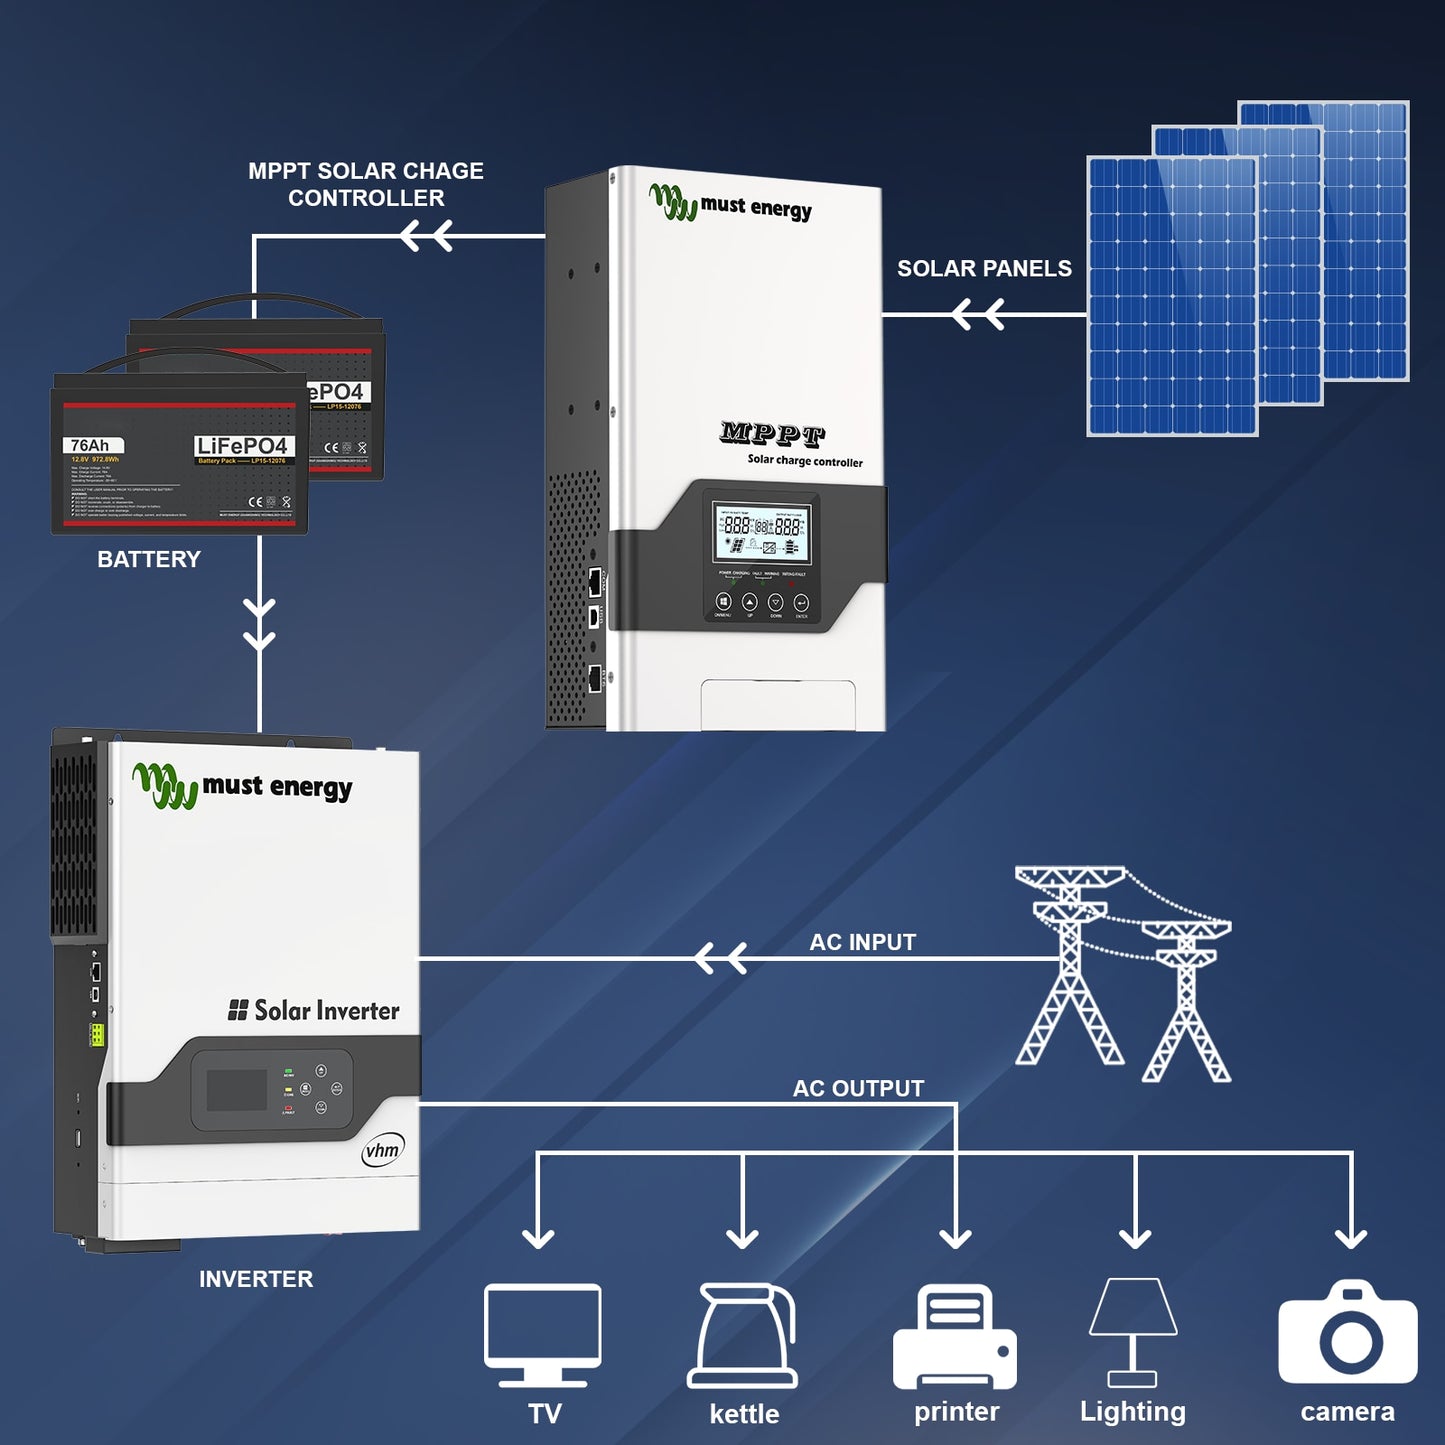 MUST ENERGY 80A 100A MPPT contrôleur de Charge solaire chargeur Lifepo4 12V 24V 36V 48V régulateur de panneau solaire entrée PV 145V